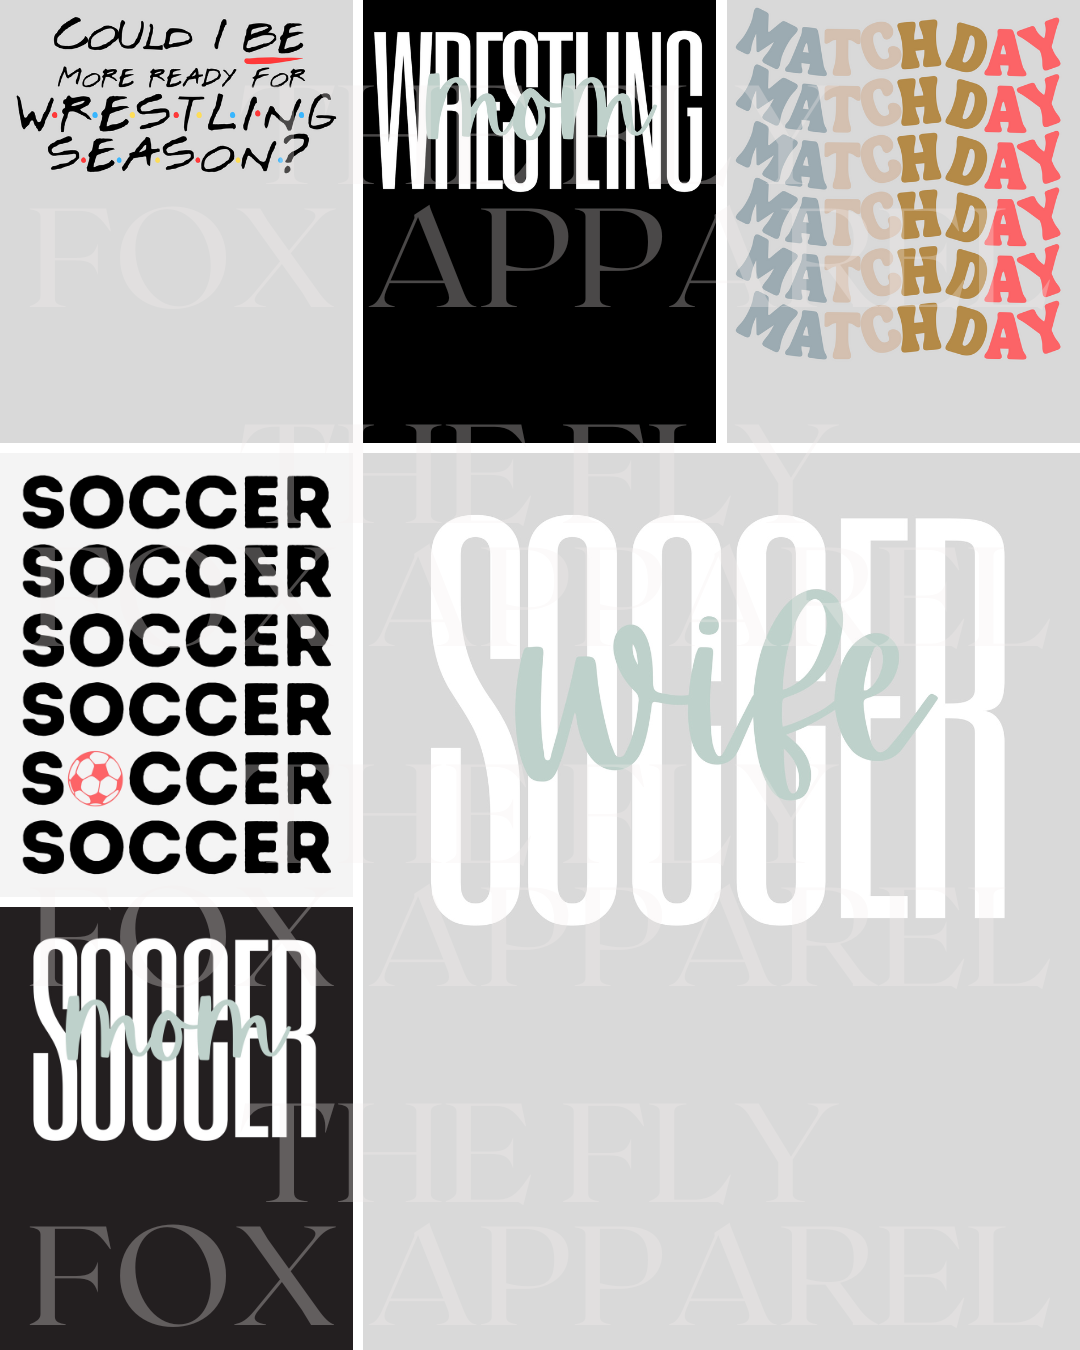 Soccer SVG Bundle